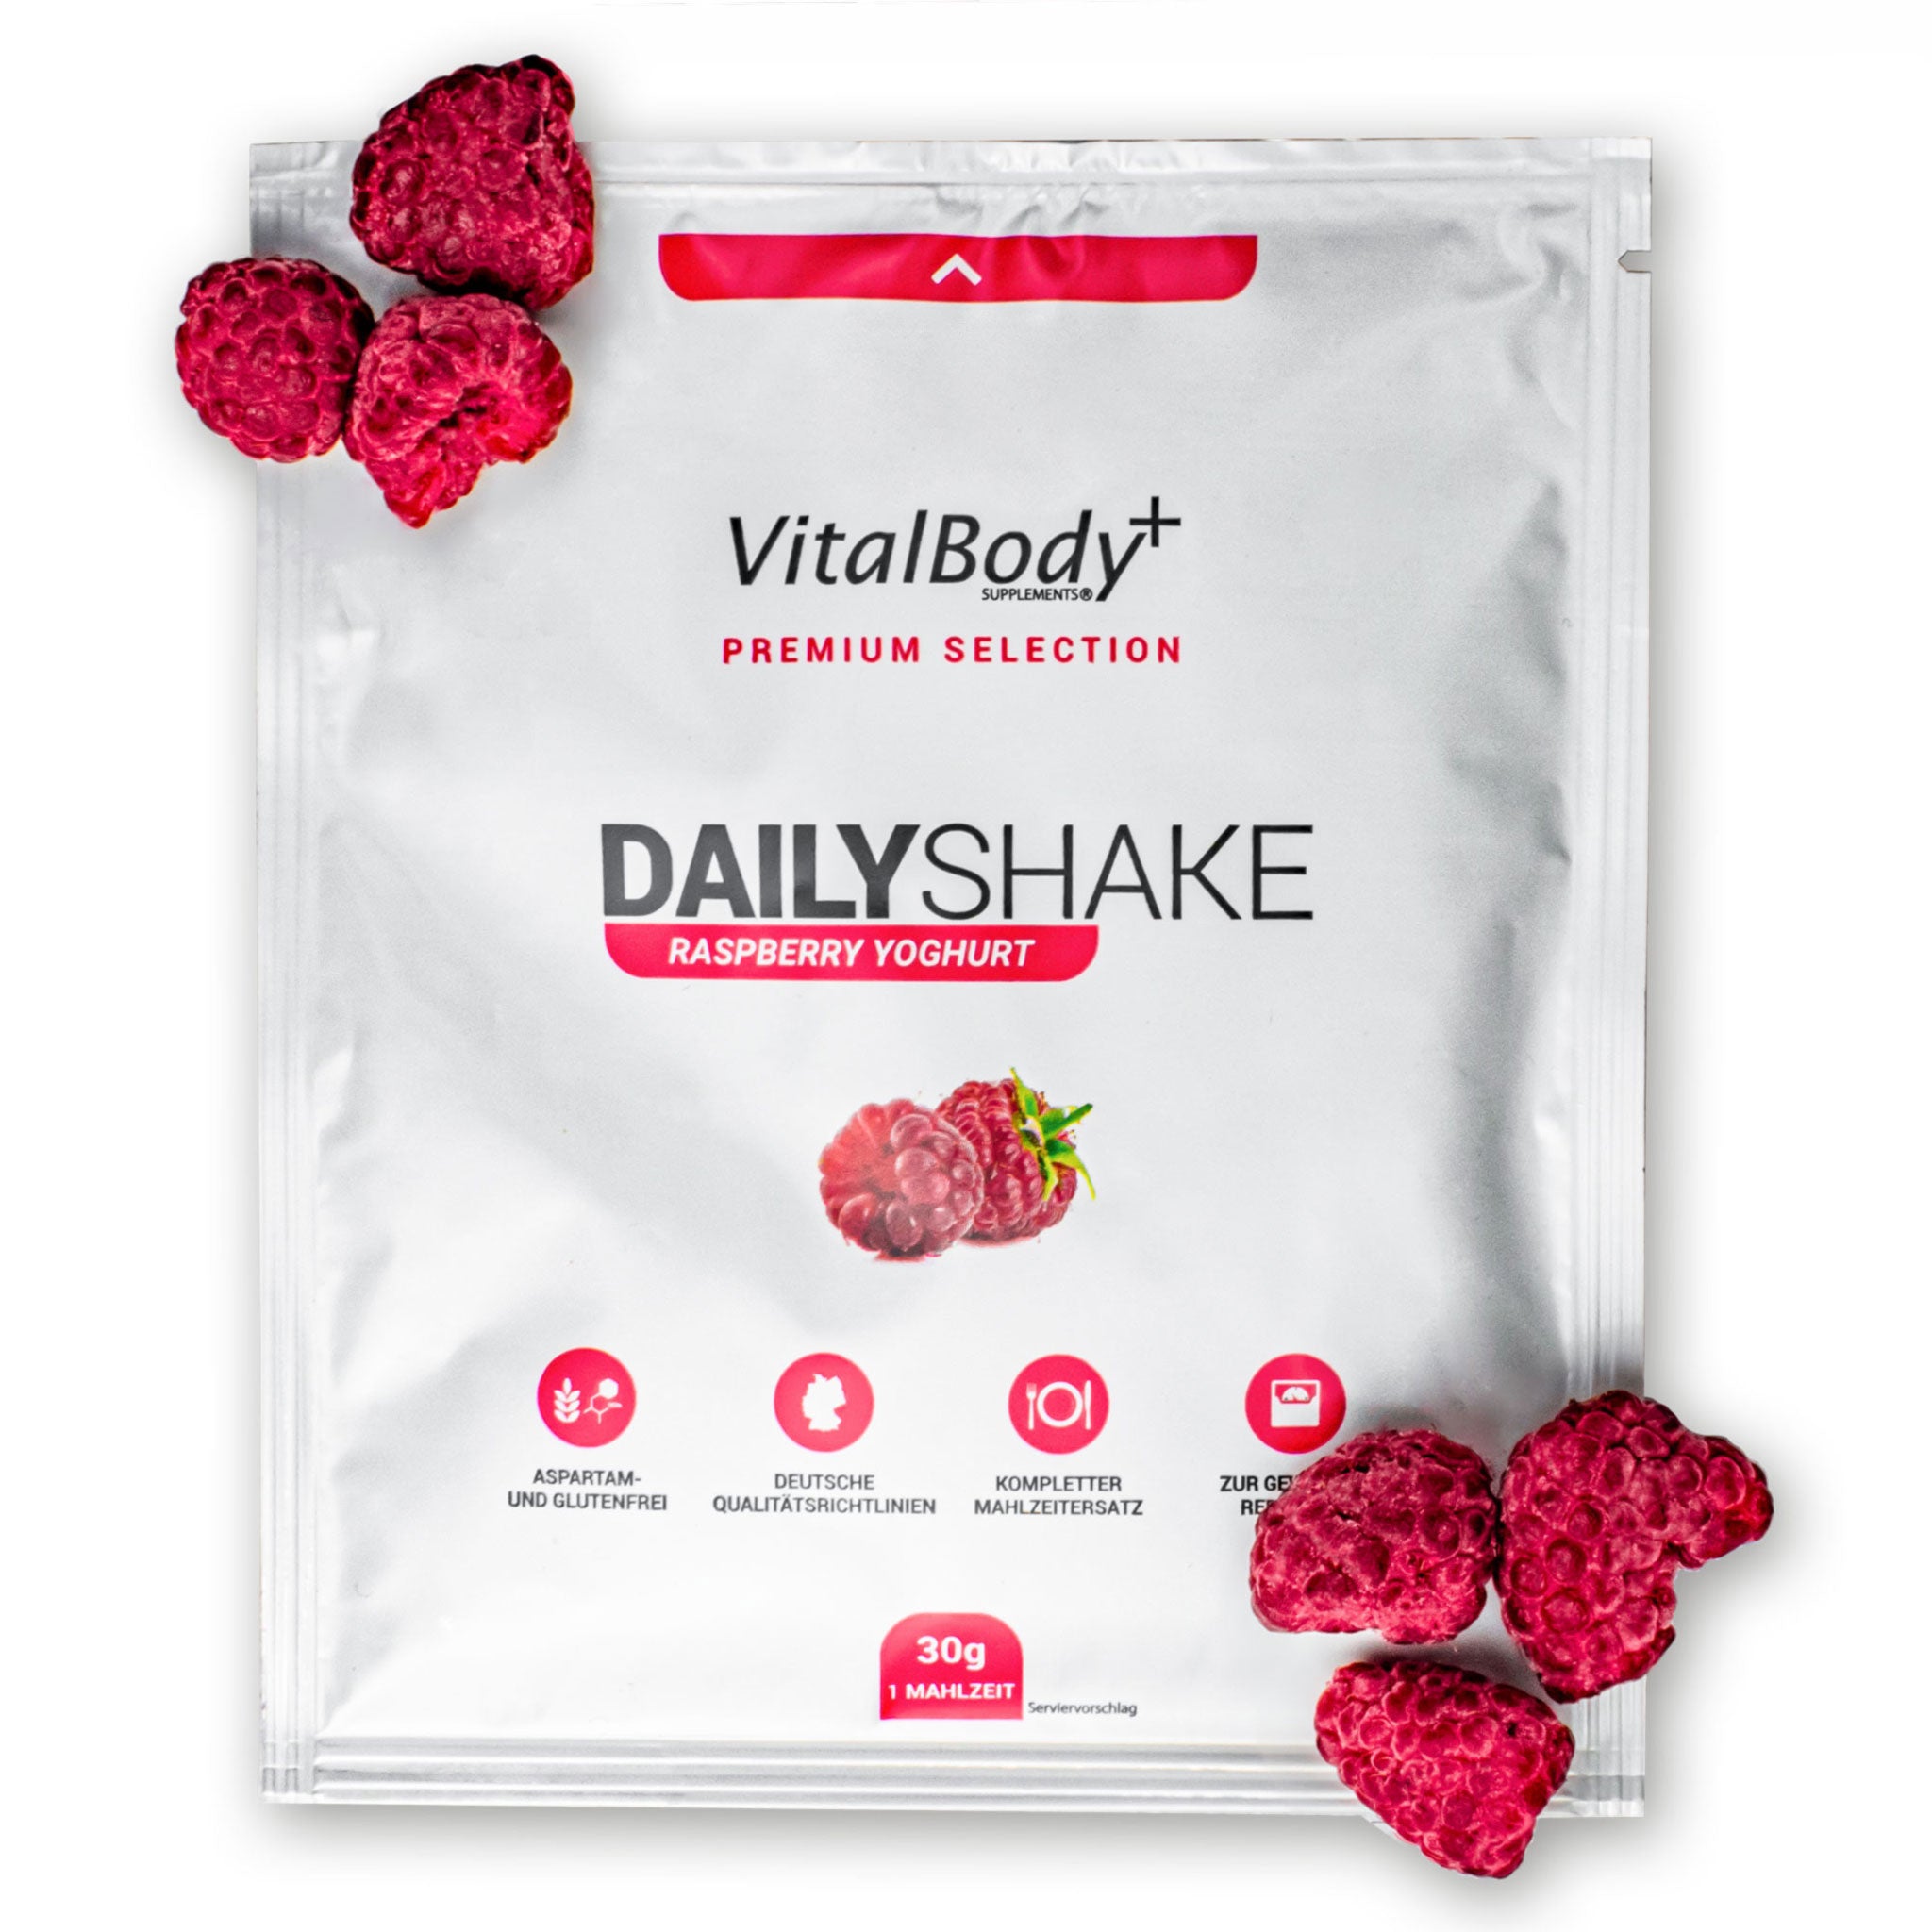 DailyShake To Go Pack Raspberry Yoghurt mit Himbeeren belegt auf weißem Hintergrund